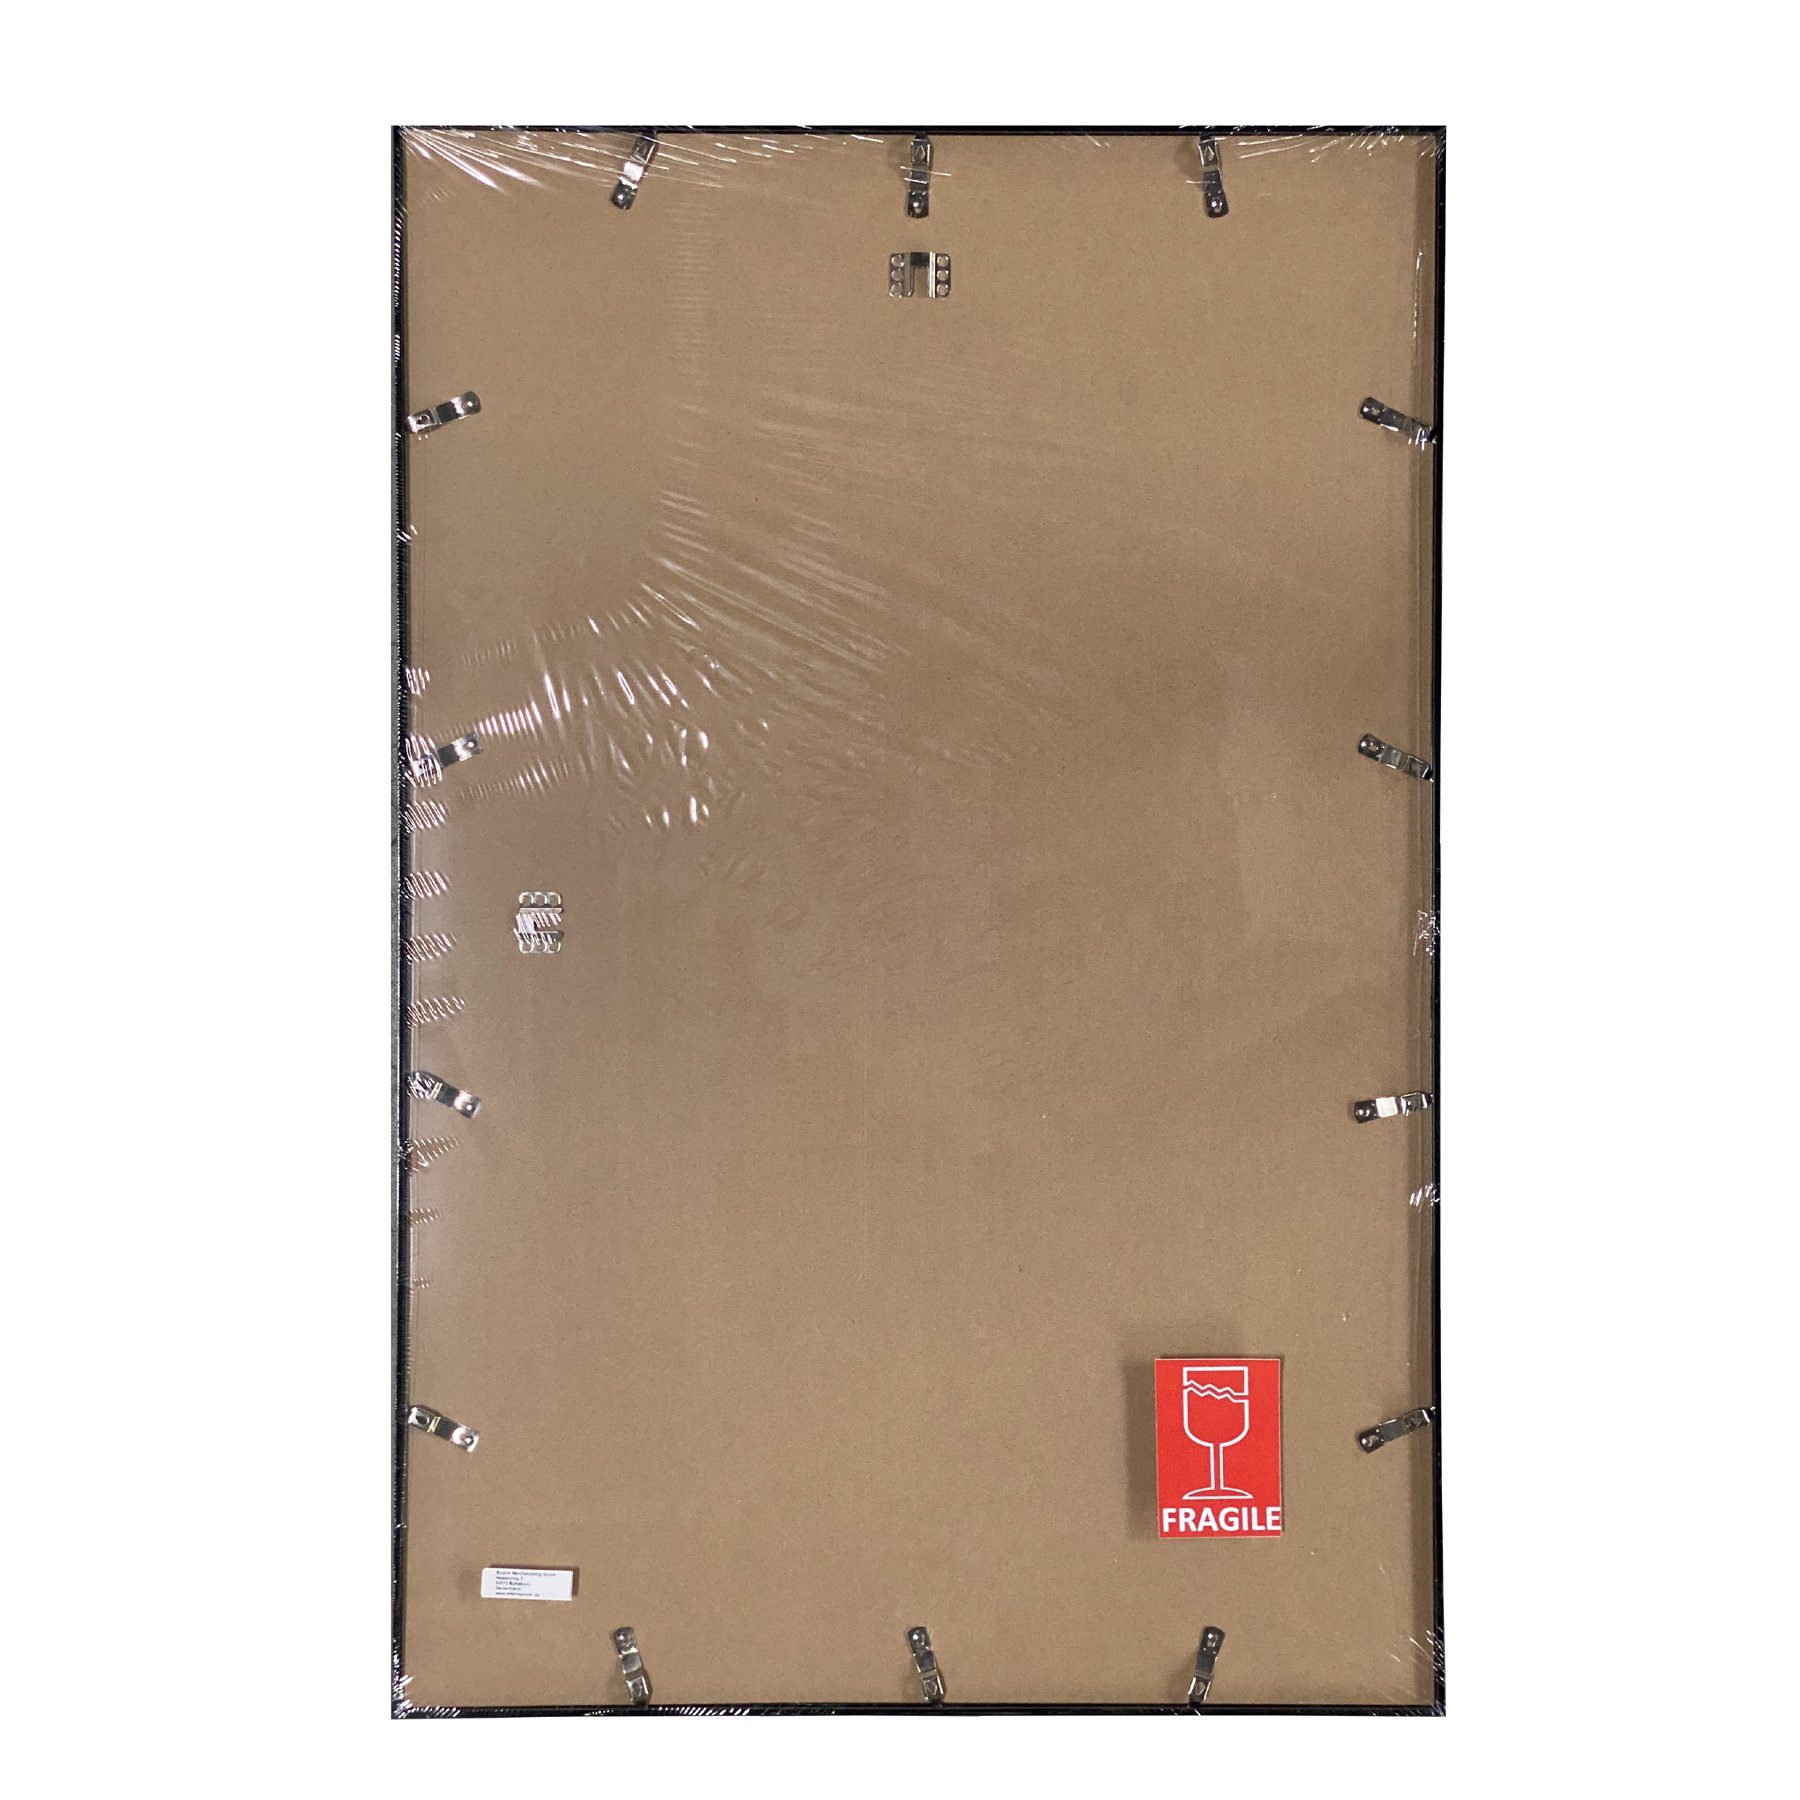 Rahmen 61x91,5cm, mit Posterrahmen Wechselrahmen Kunststoff Profil: silber 15mm Acryl-Scheibe Farbe Shinsuke® Maxi-Poster empireposter